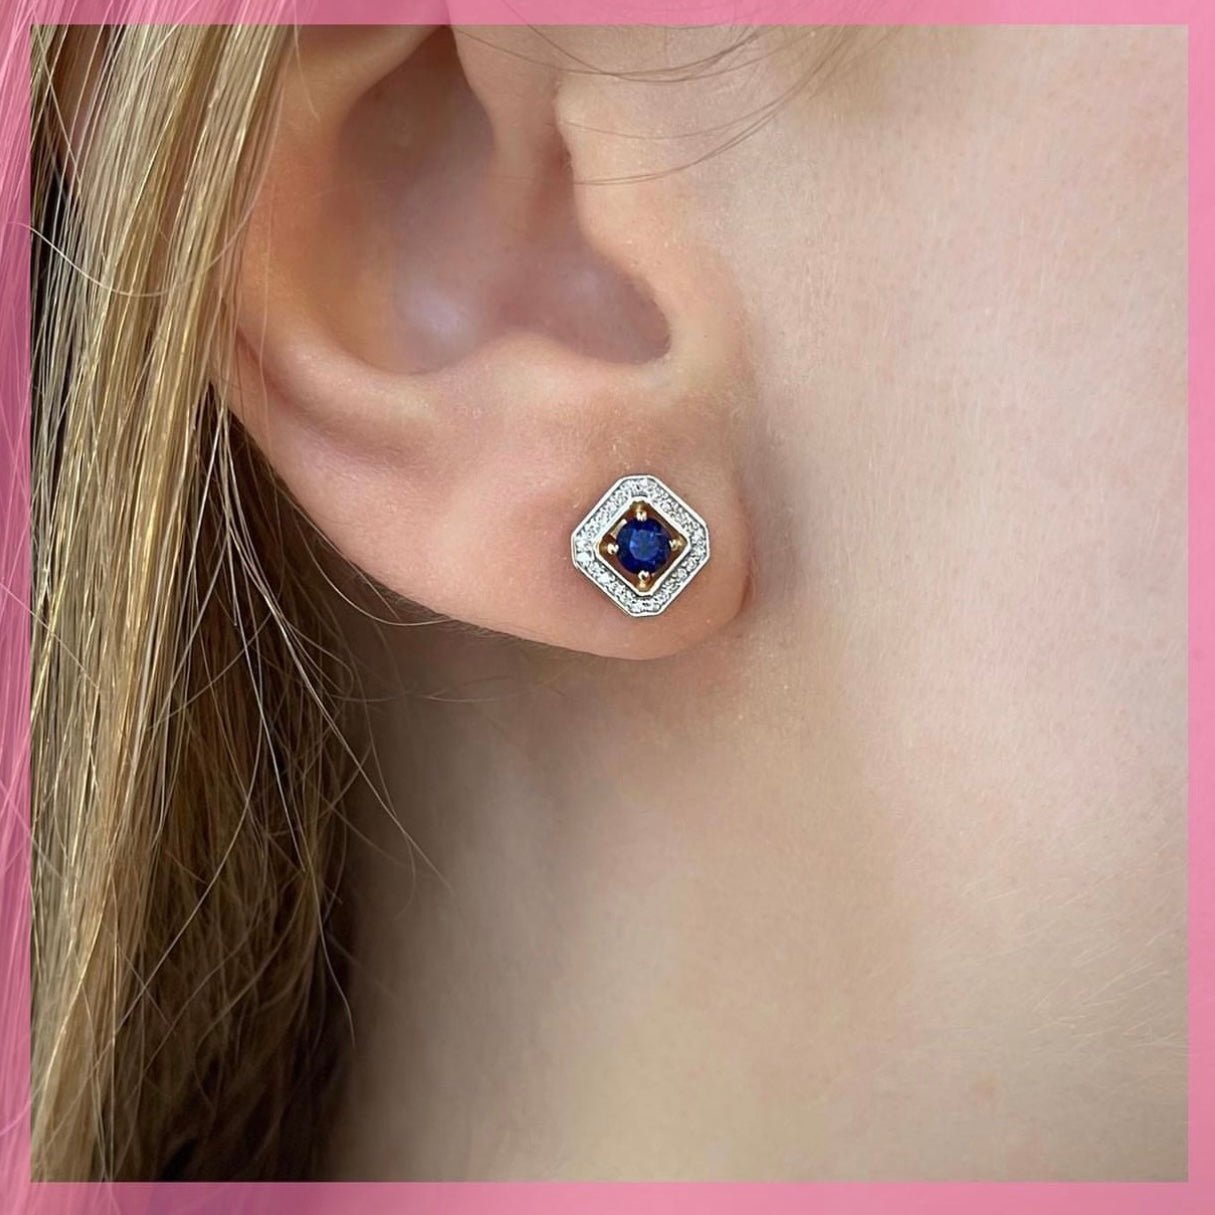 Helen Earrings in Diamond and Sapphire - 18k Gold - Lynor